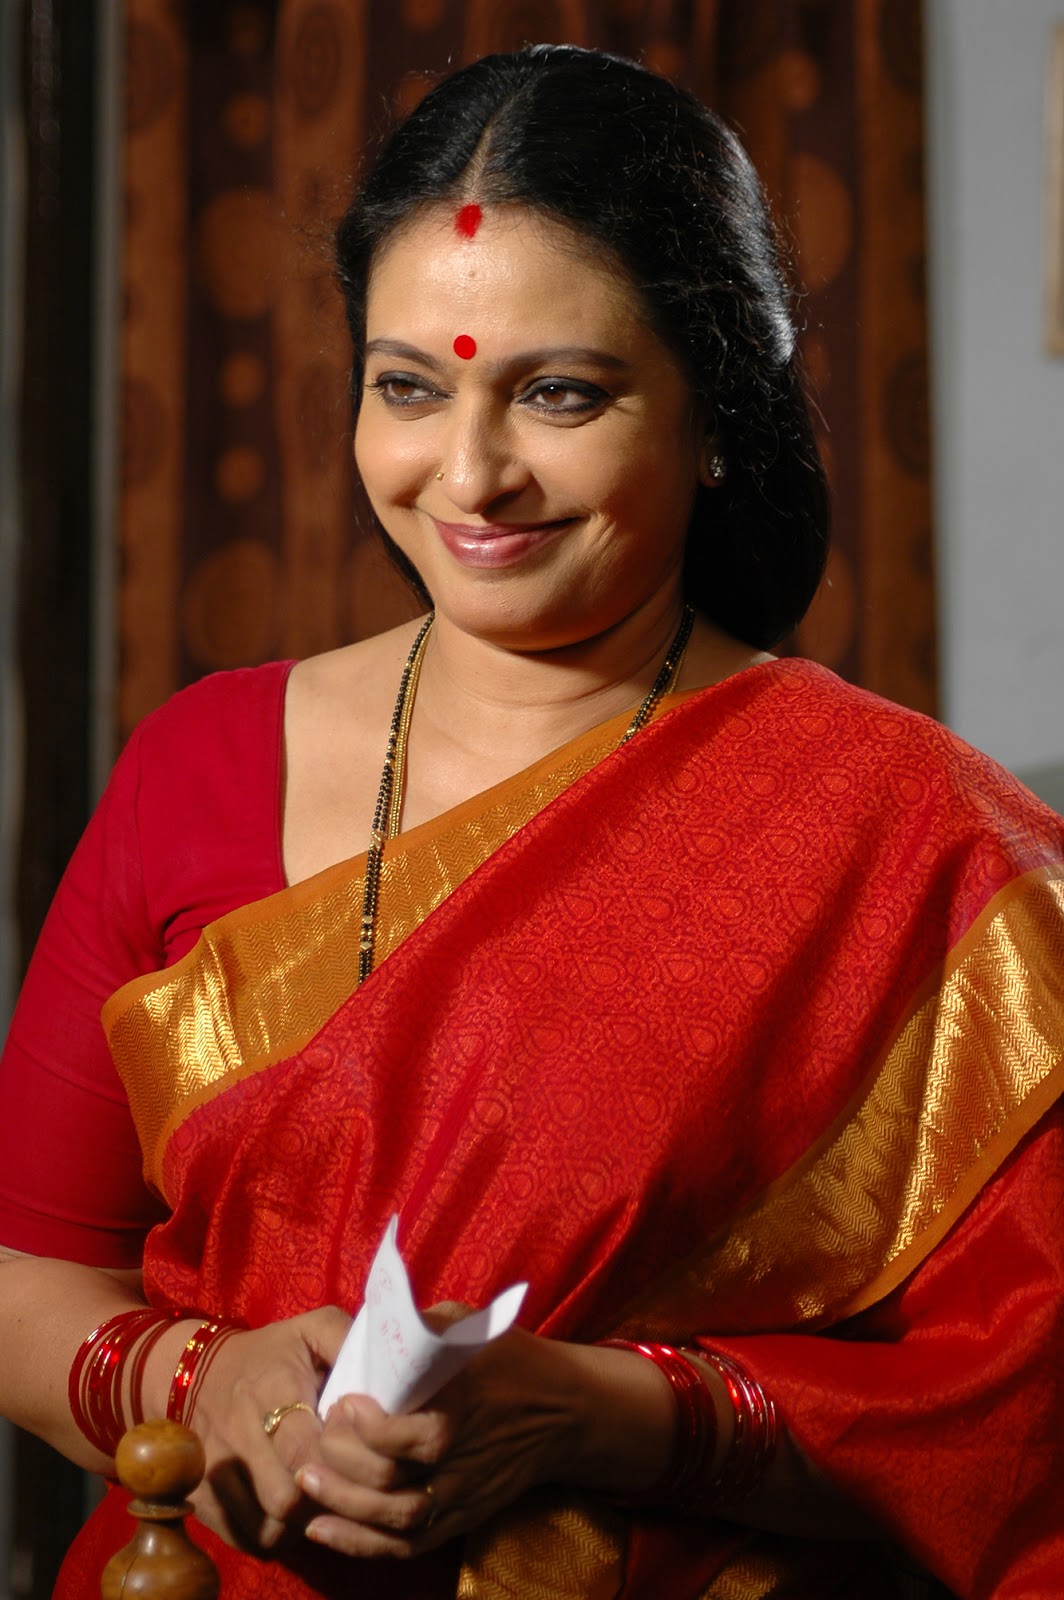 amma tapeten,sari,veranstaltung,tradition,zeremonie,lächeln